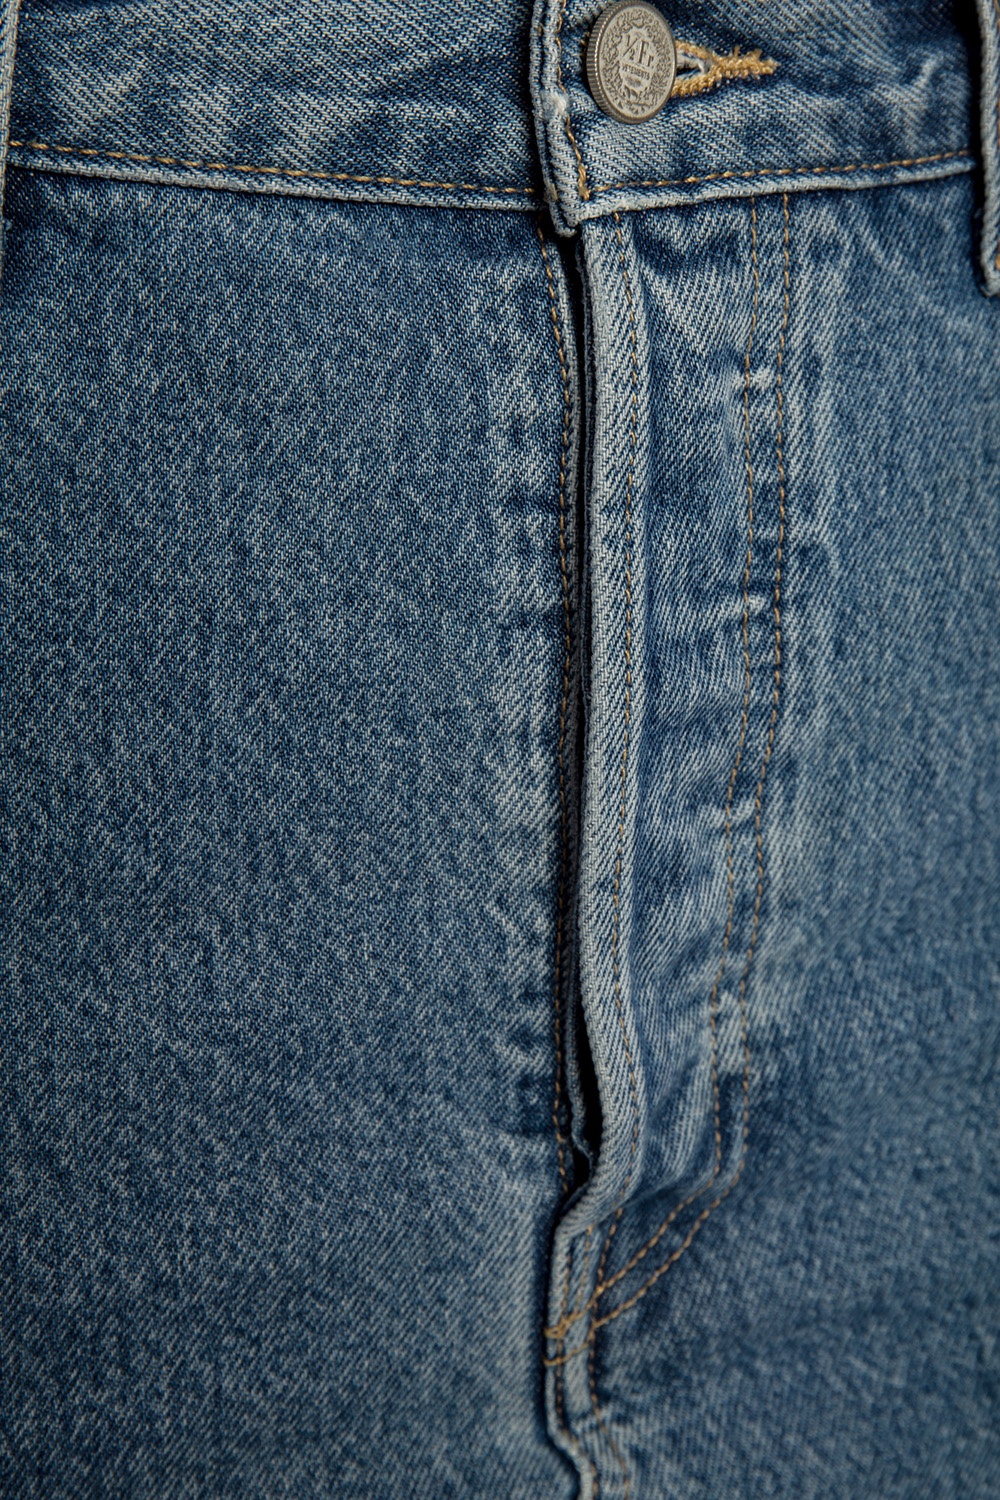 vetements levis jeans mens